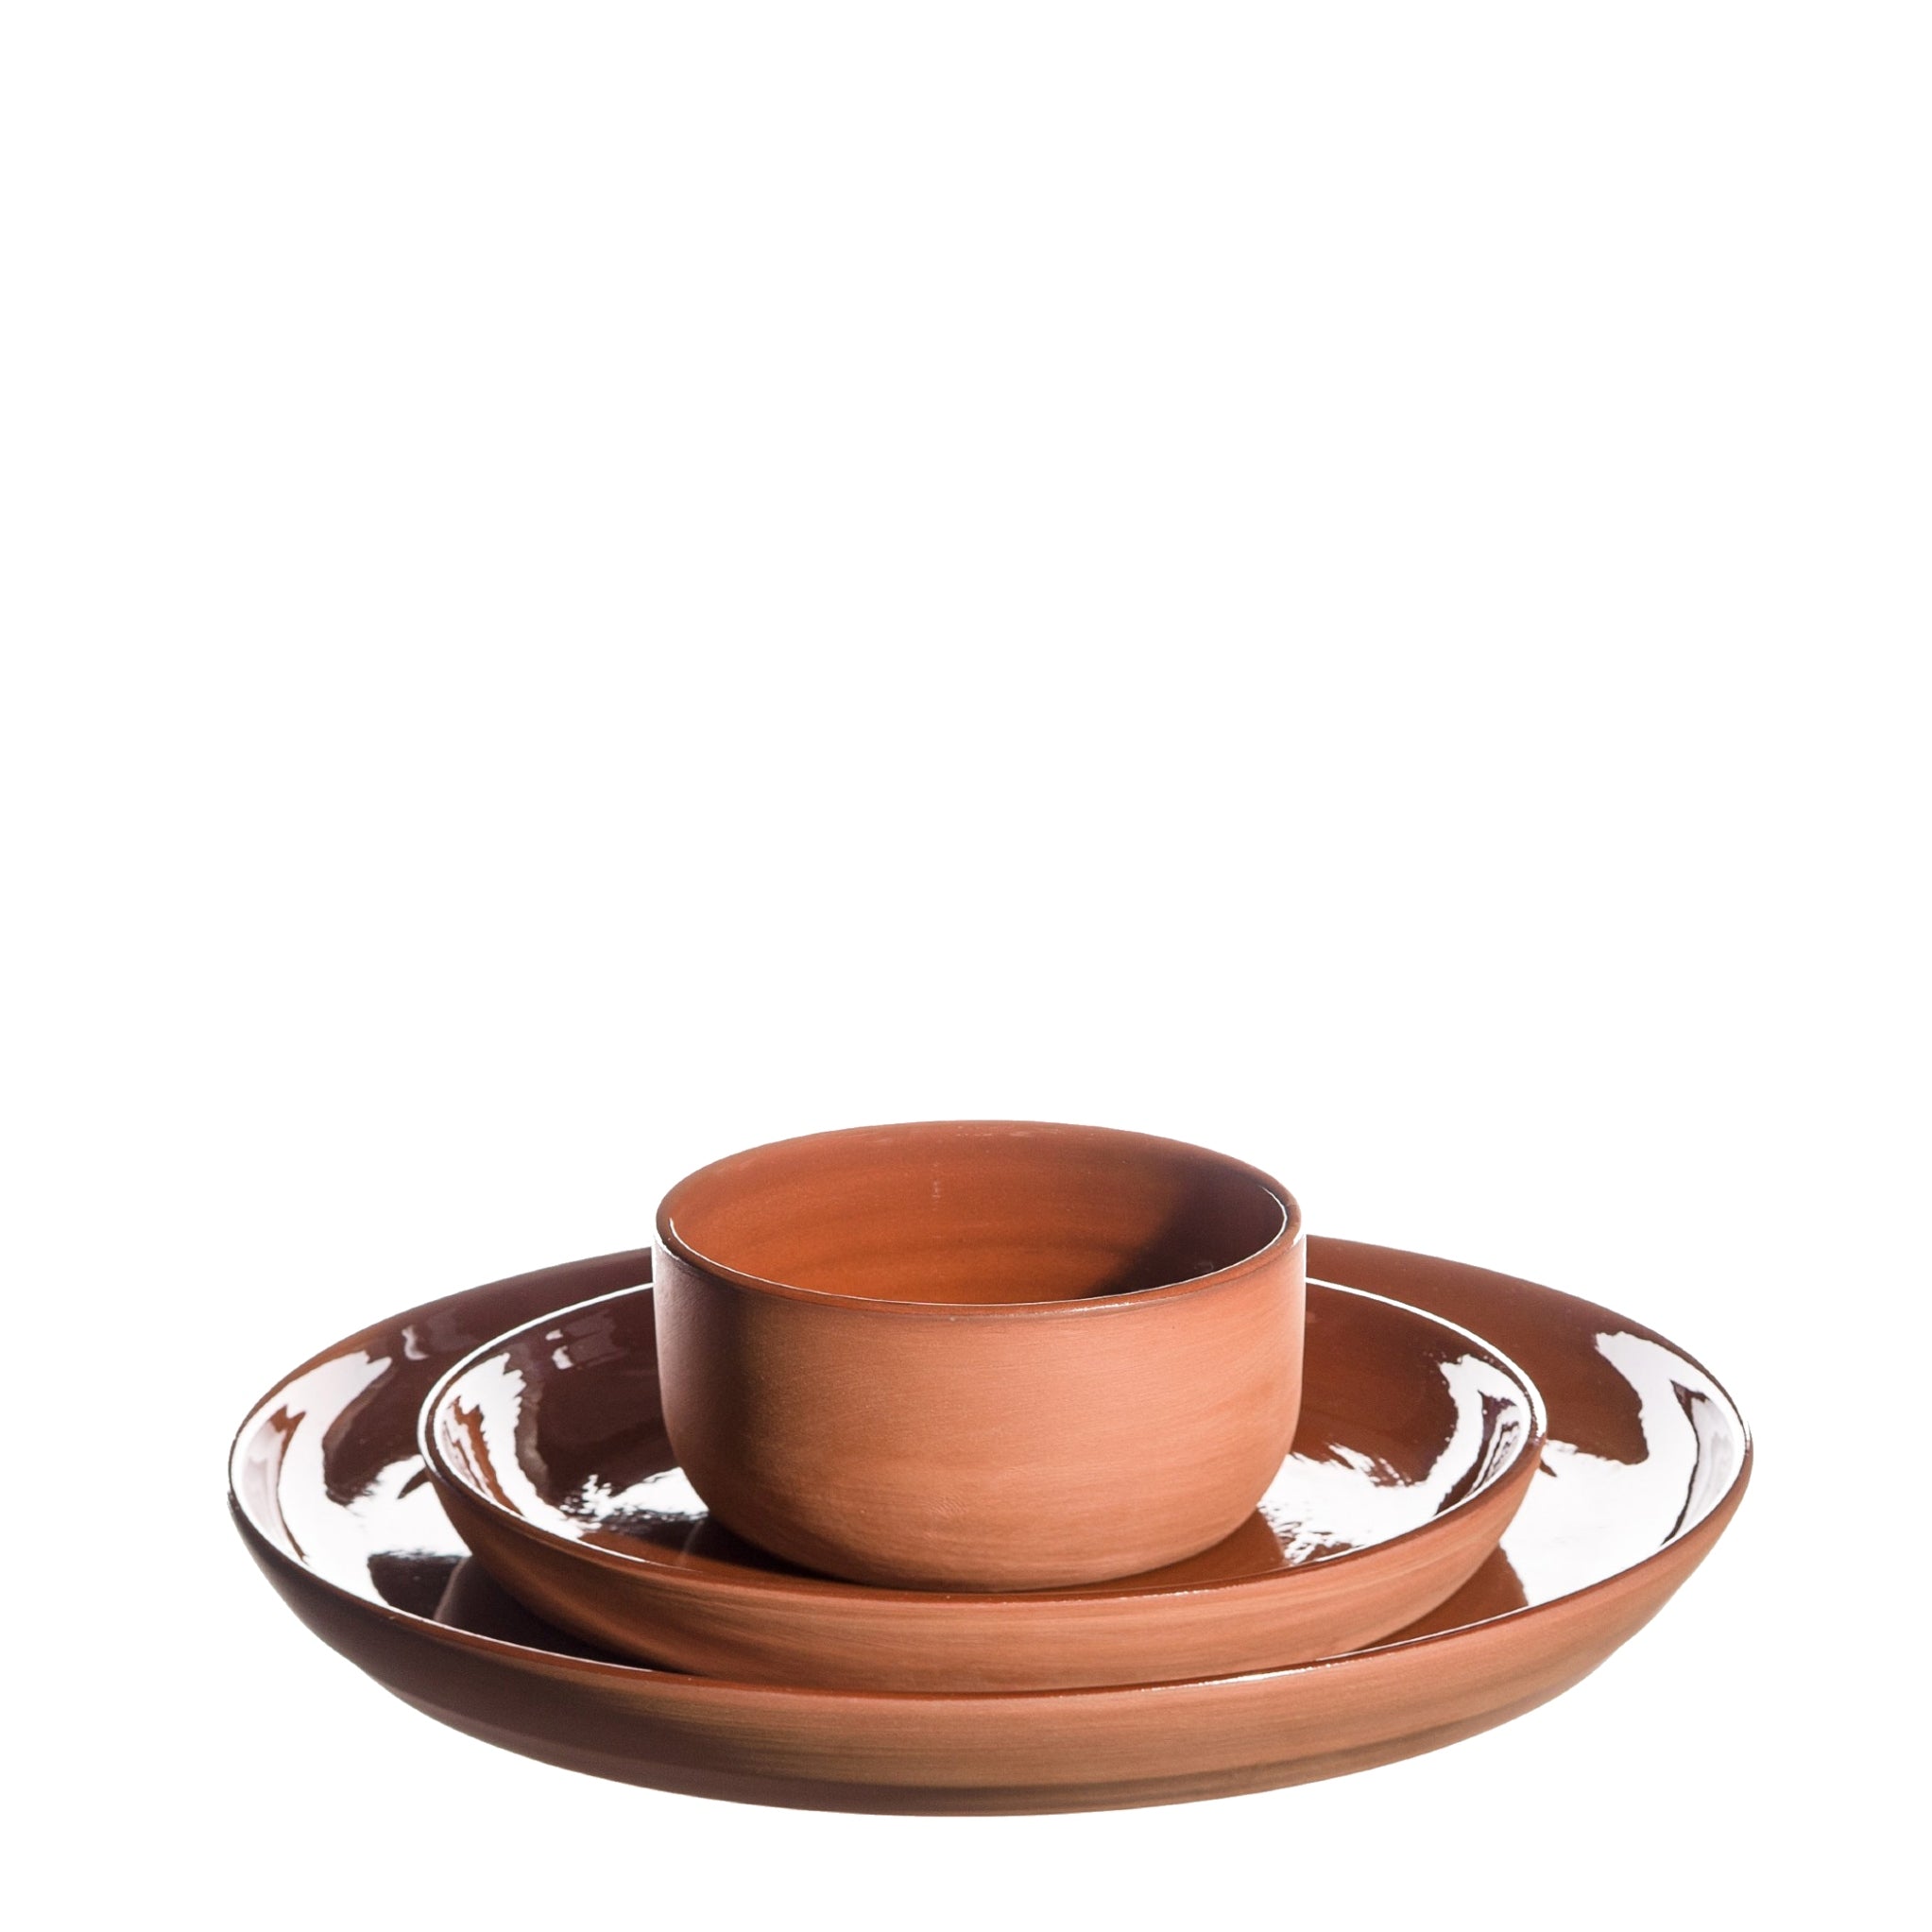 Håndlavet keramik, middagstallerken, frokosttallerken og ramekin/skål i terracotta, Atelier Bernex, Oliviers & Co